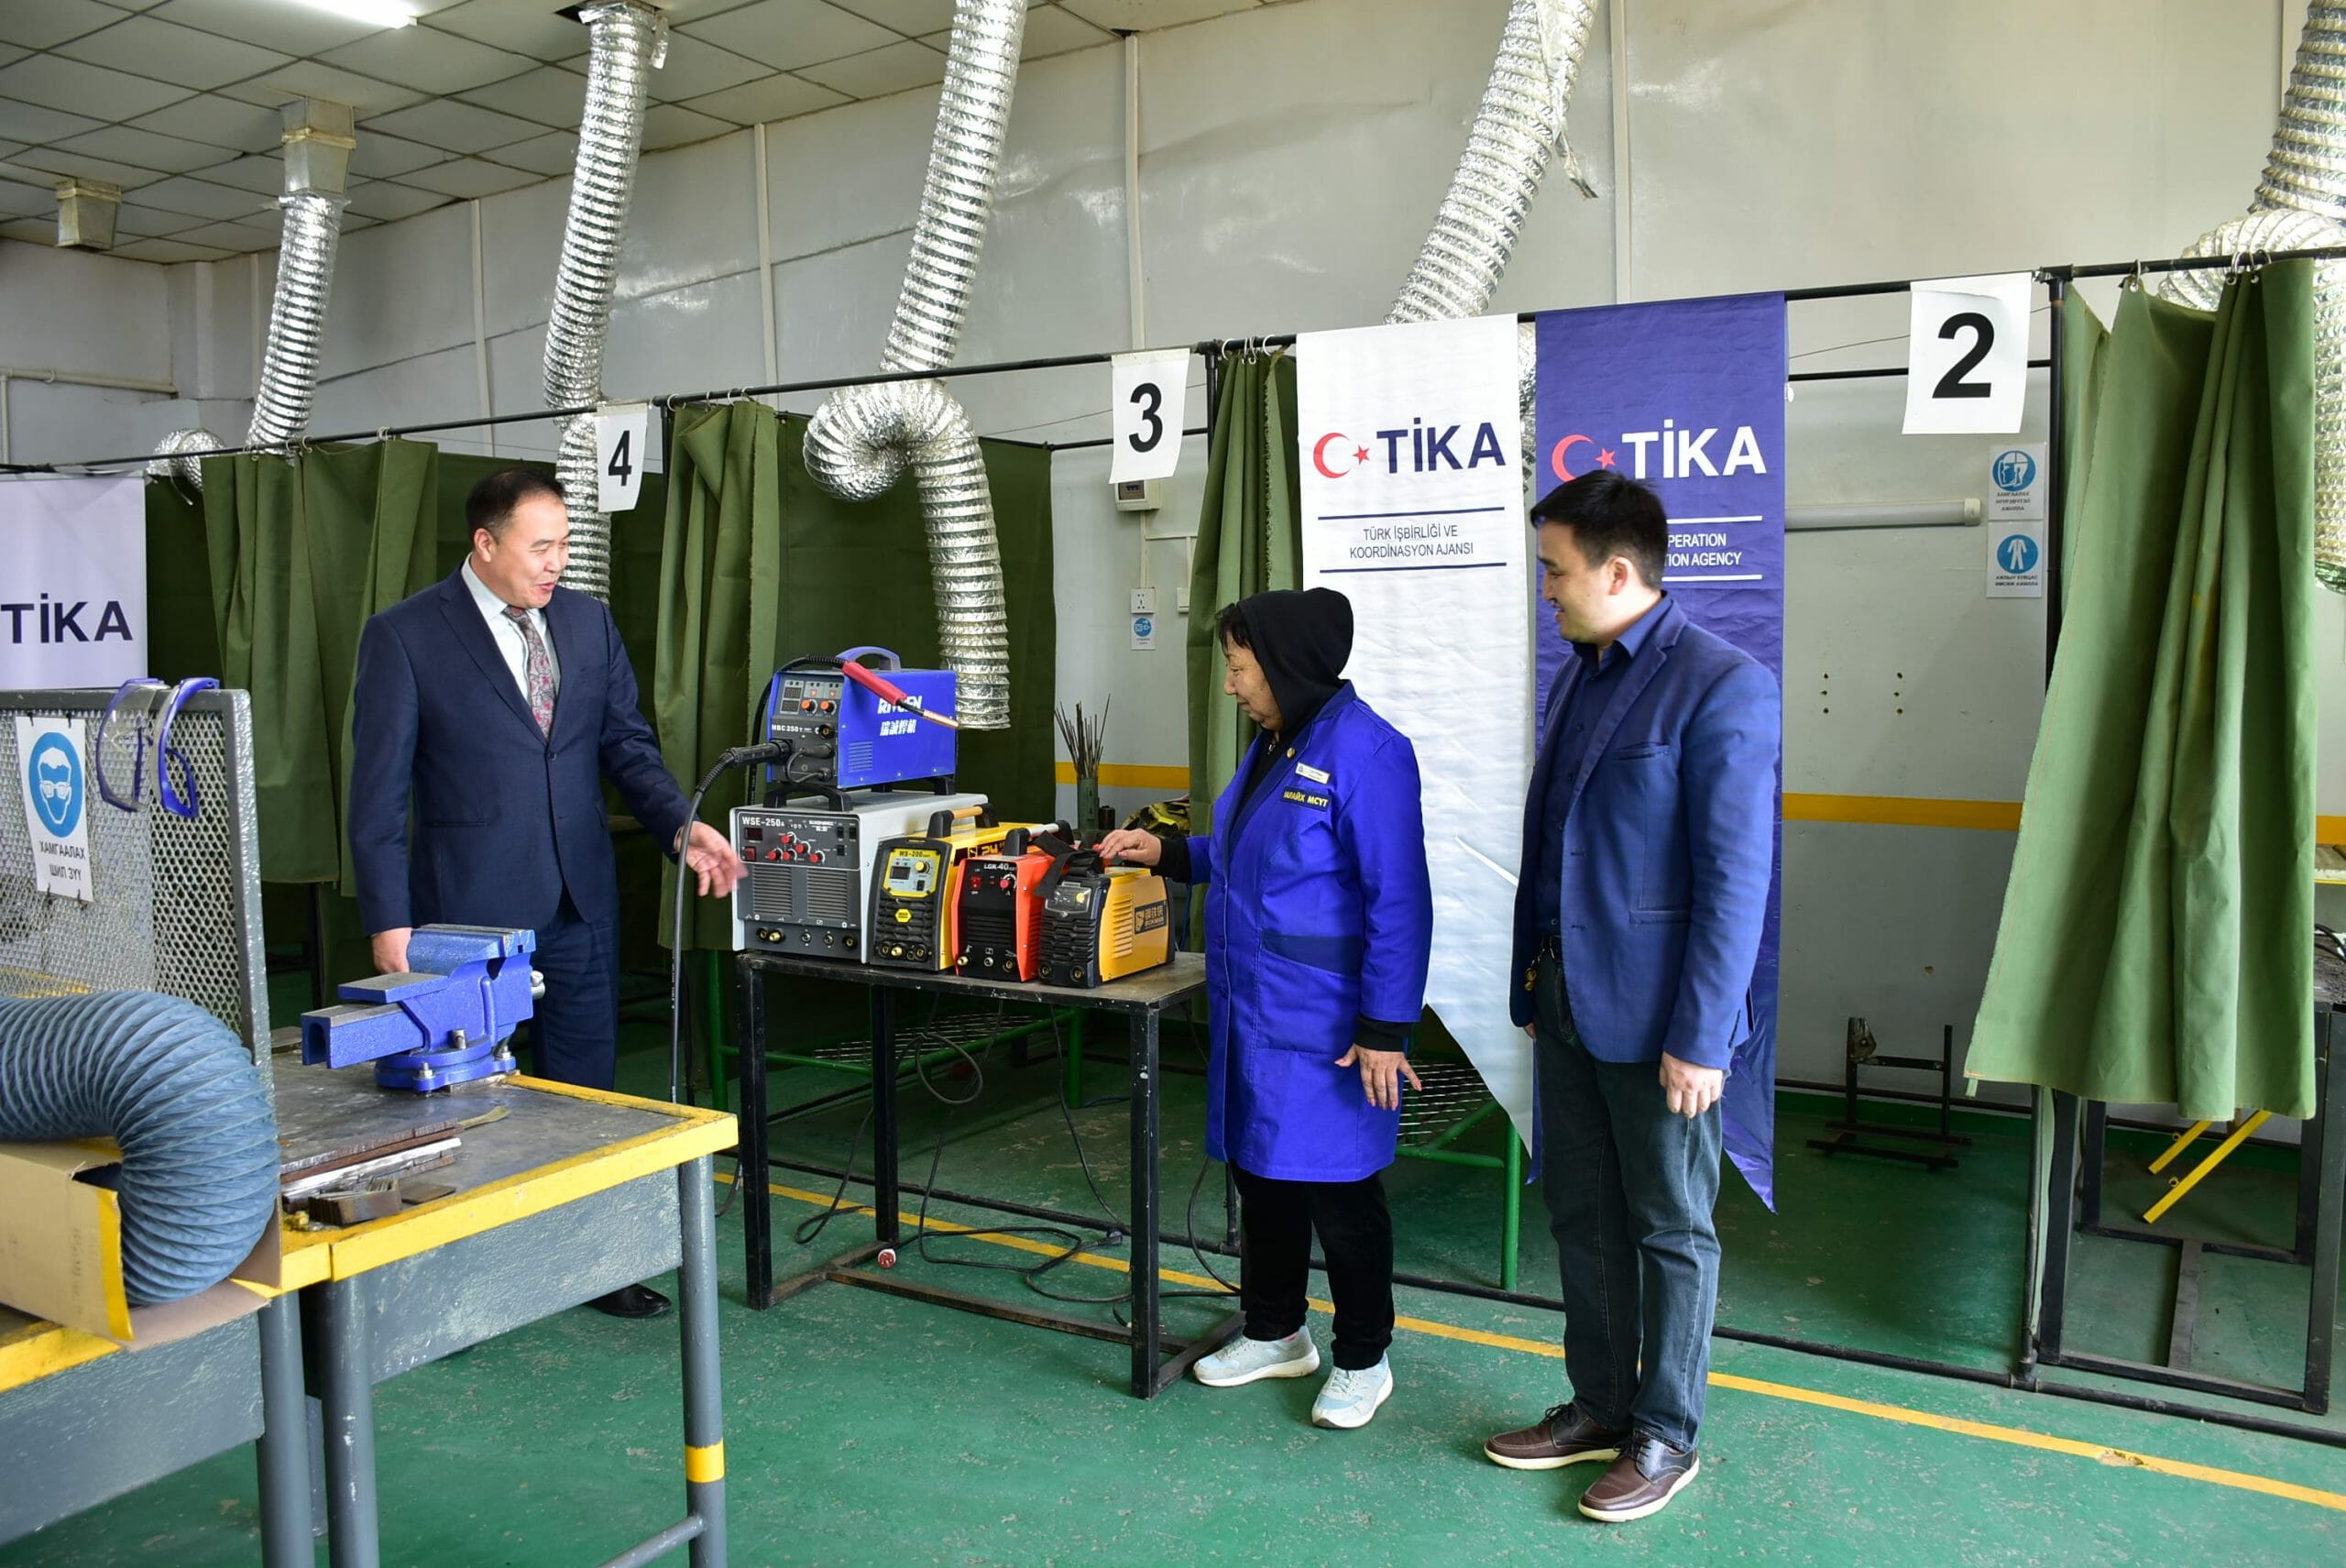  “تيكا” التركية تزود مدرسة مهنية منغولية بمعدات تدريبية